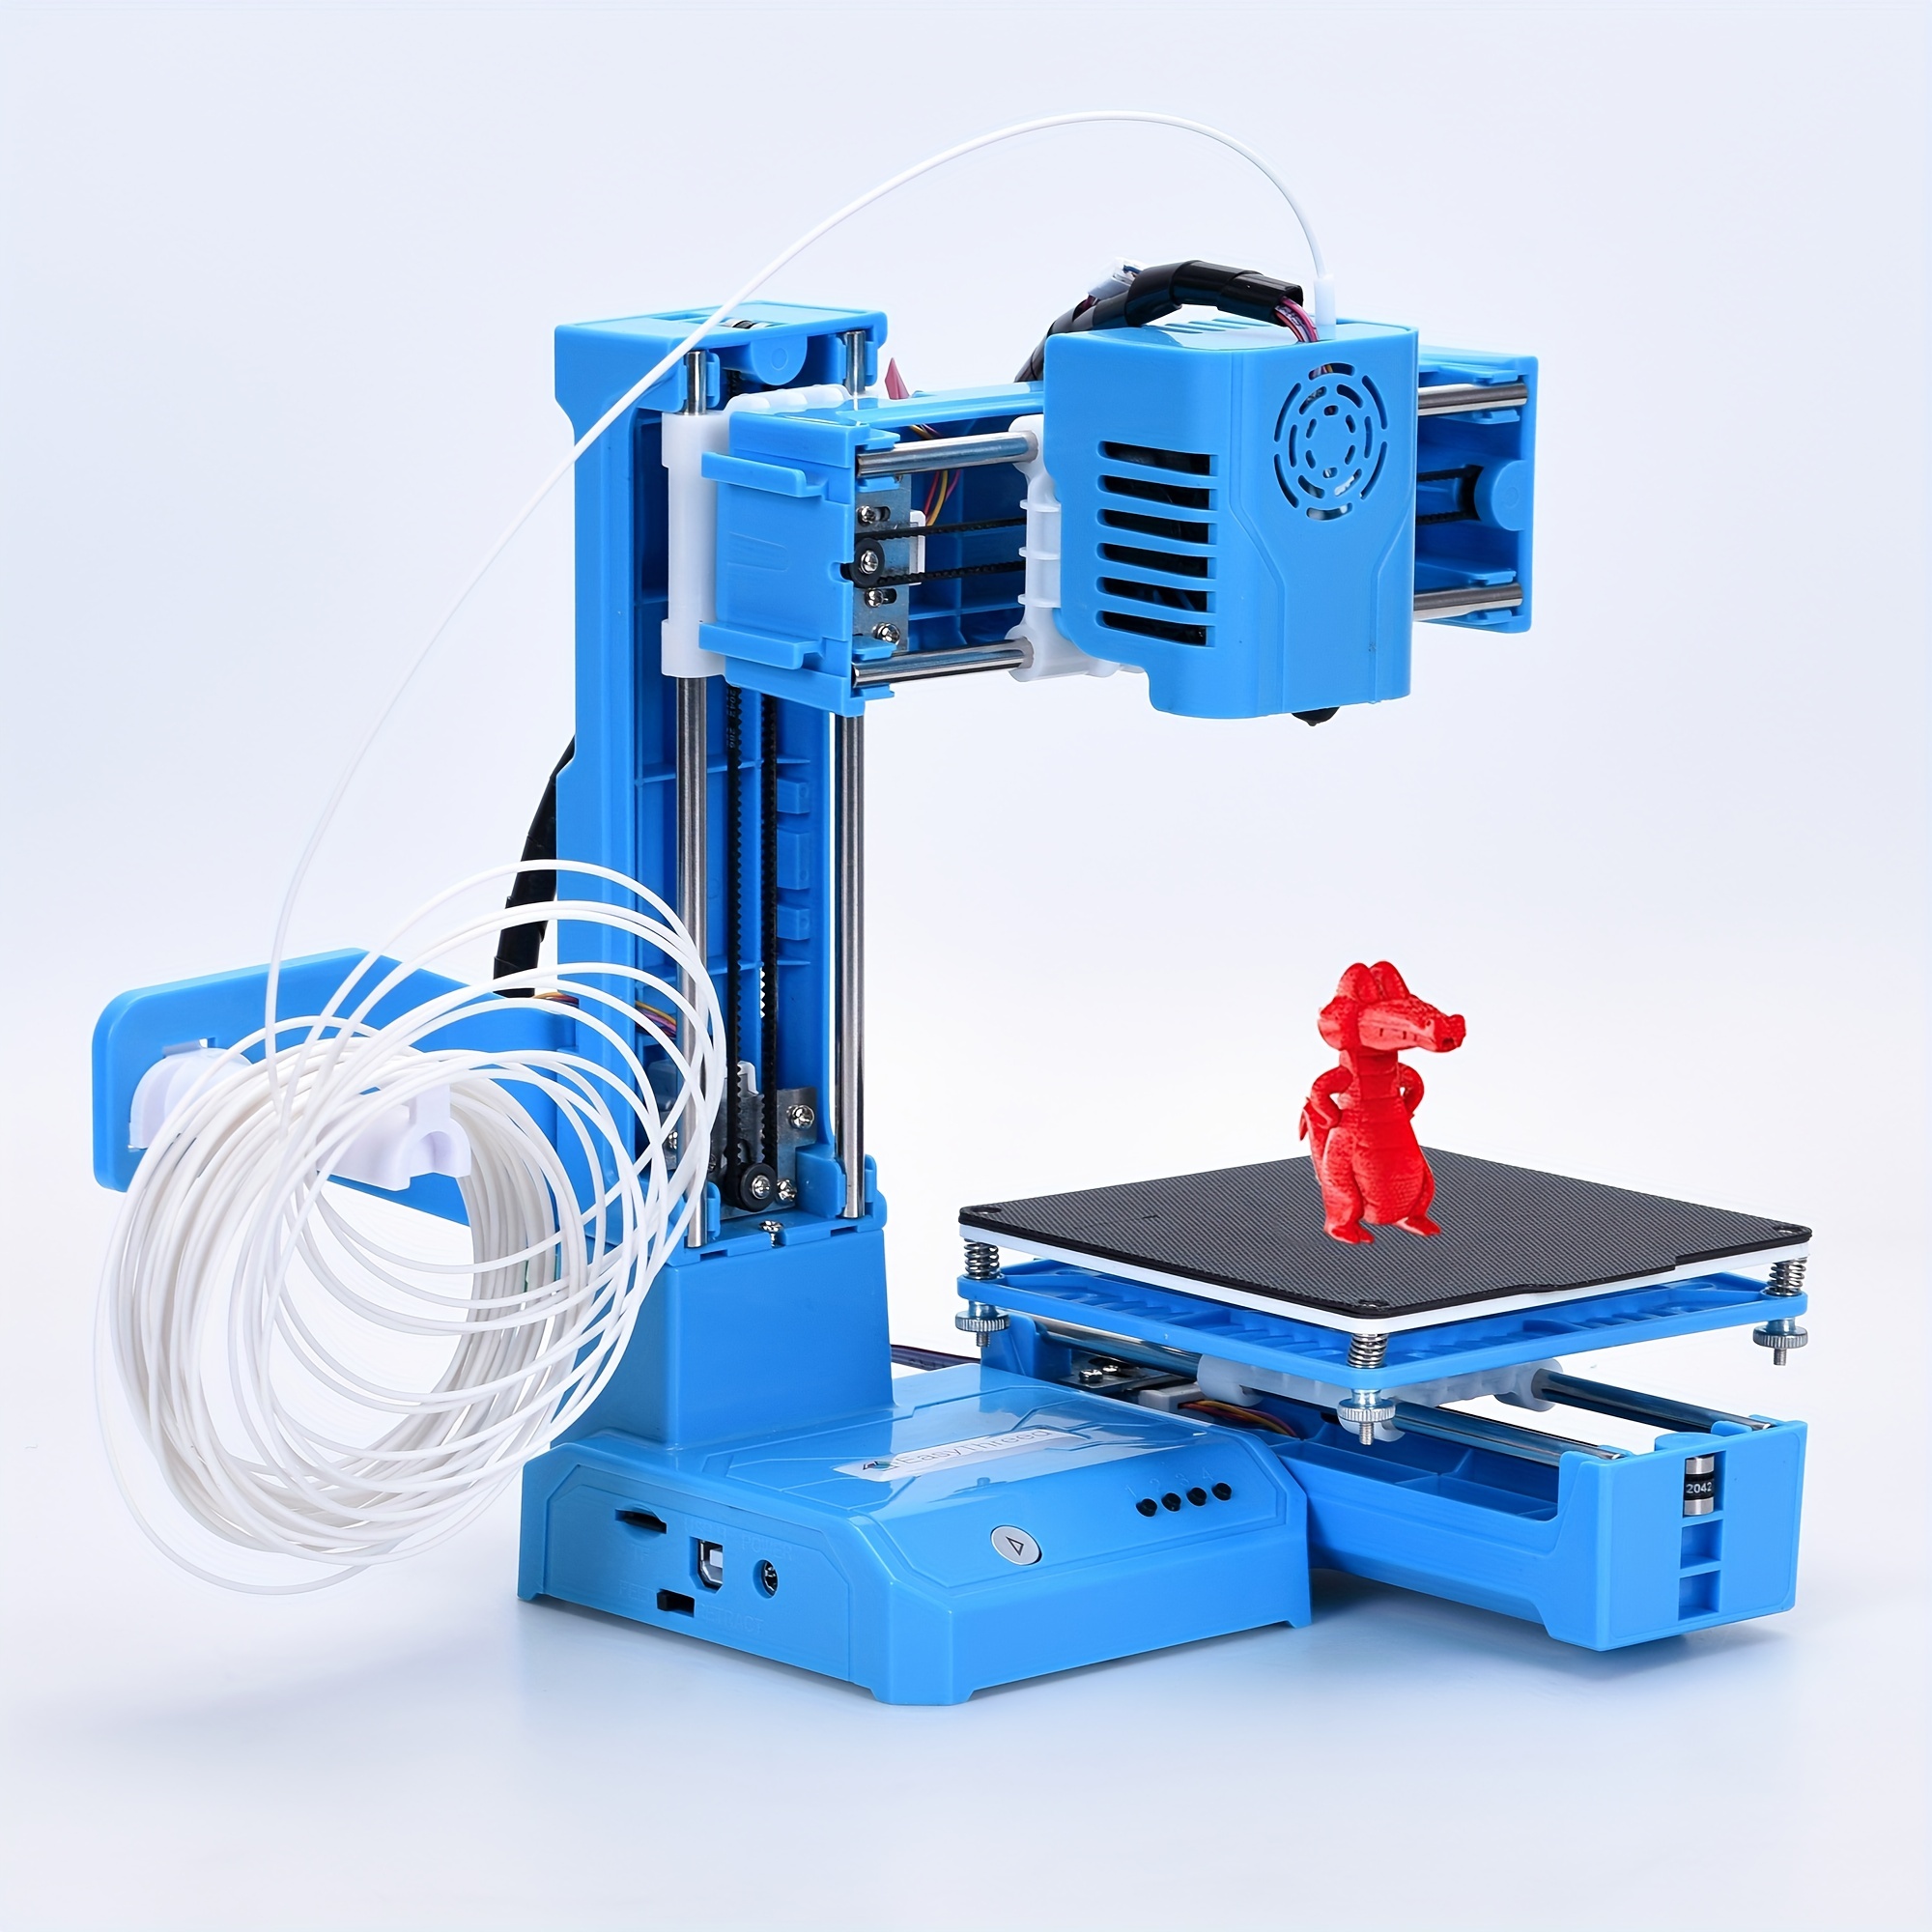 Filo Stampante 3D: Miglior Filamento per la tua Stampante •